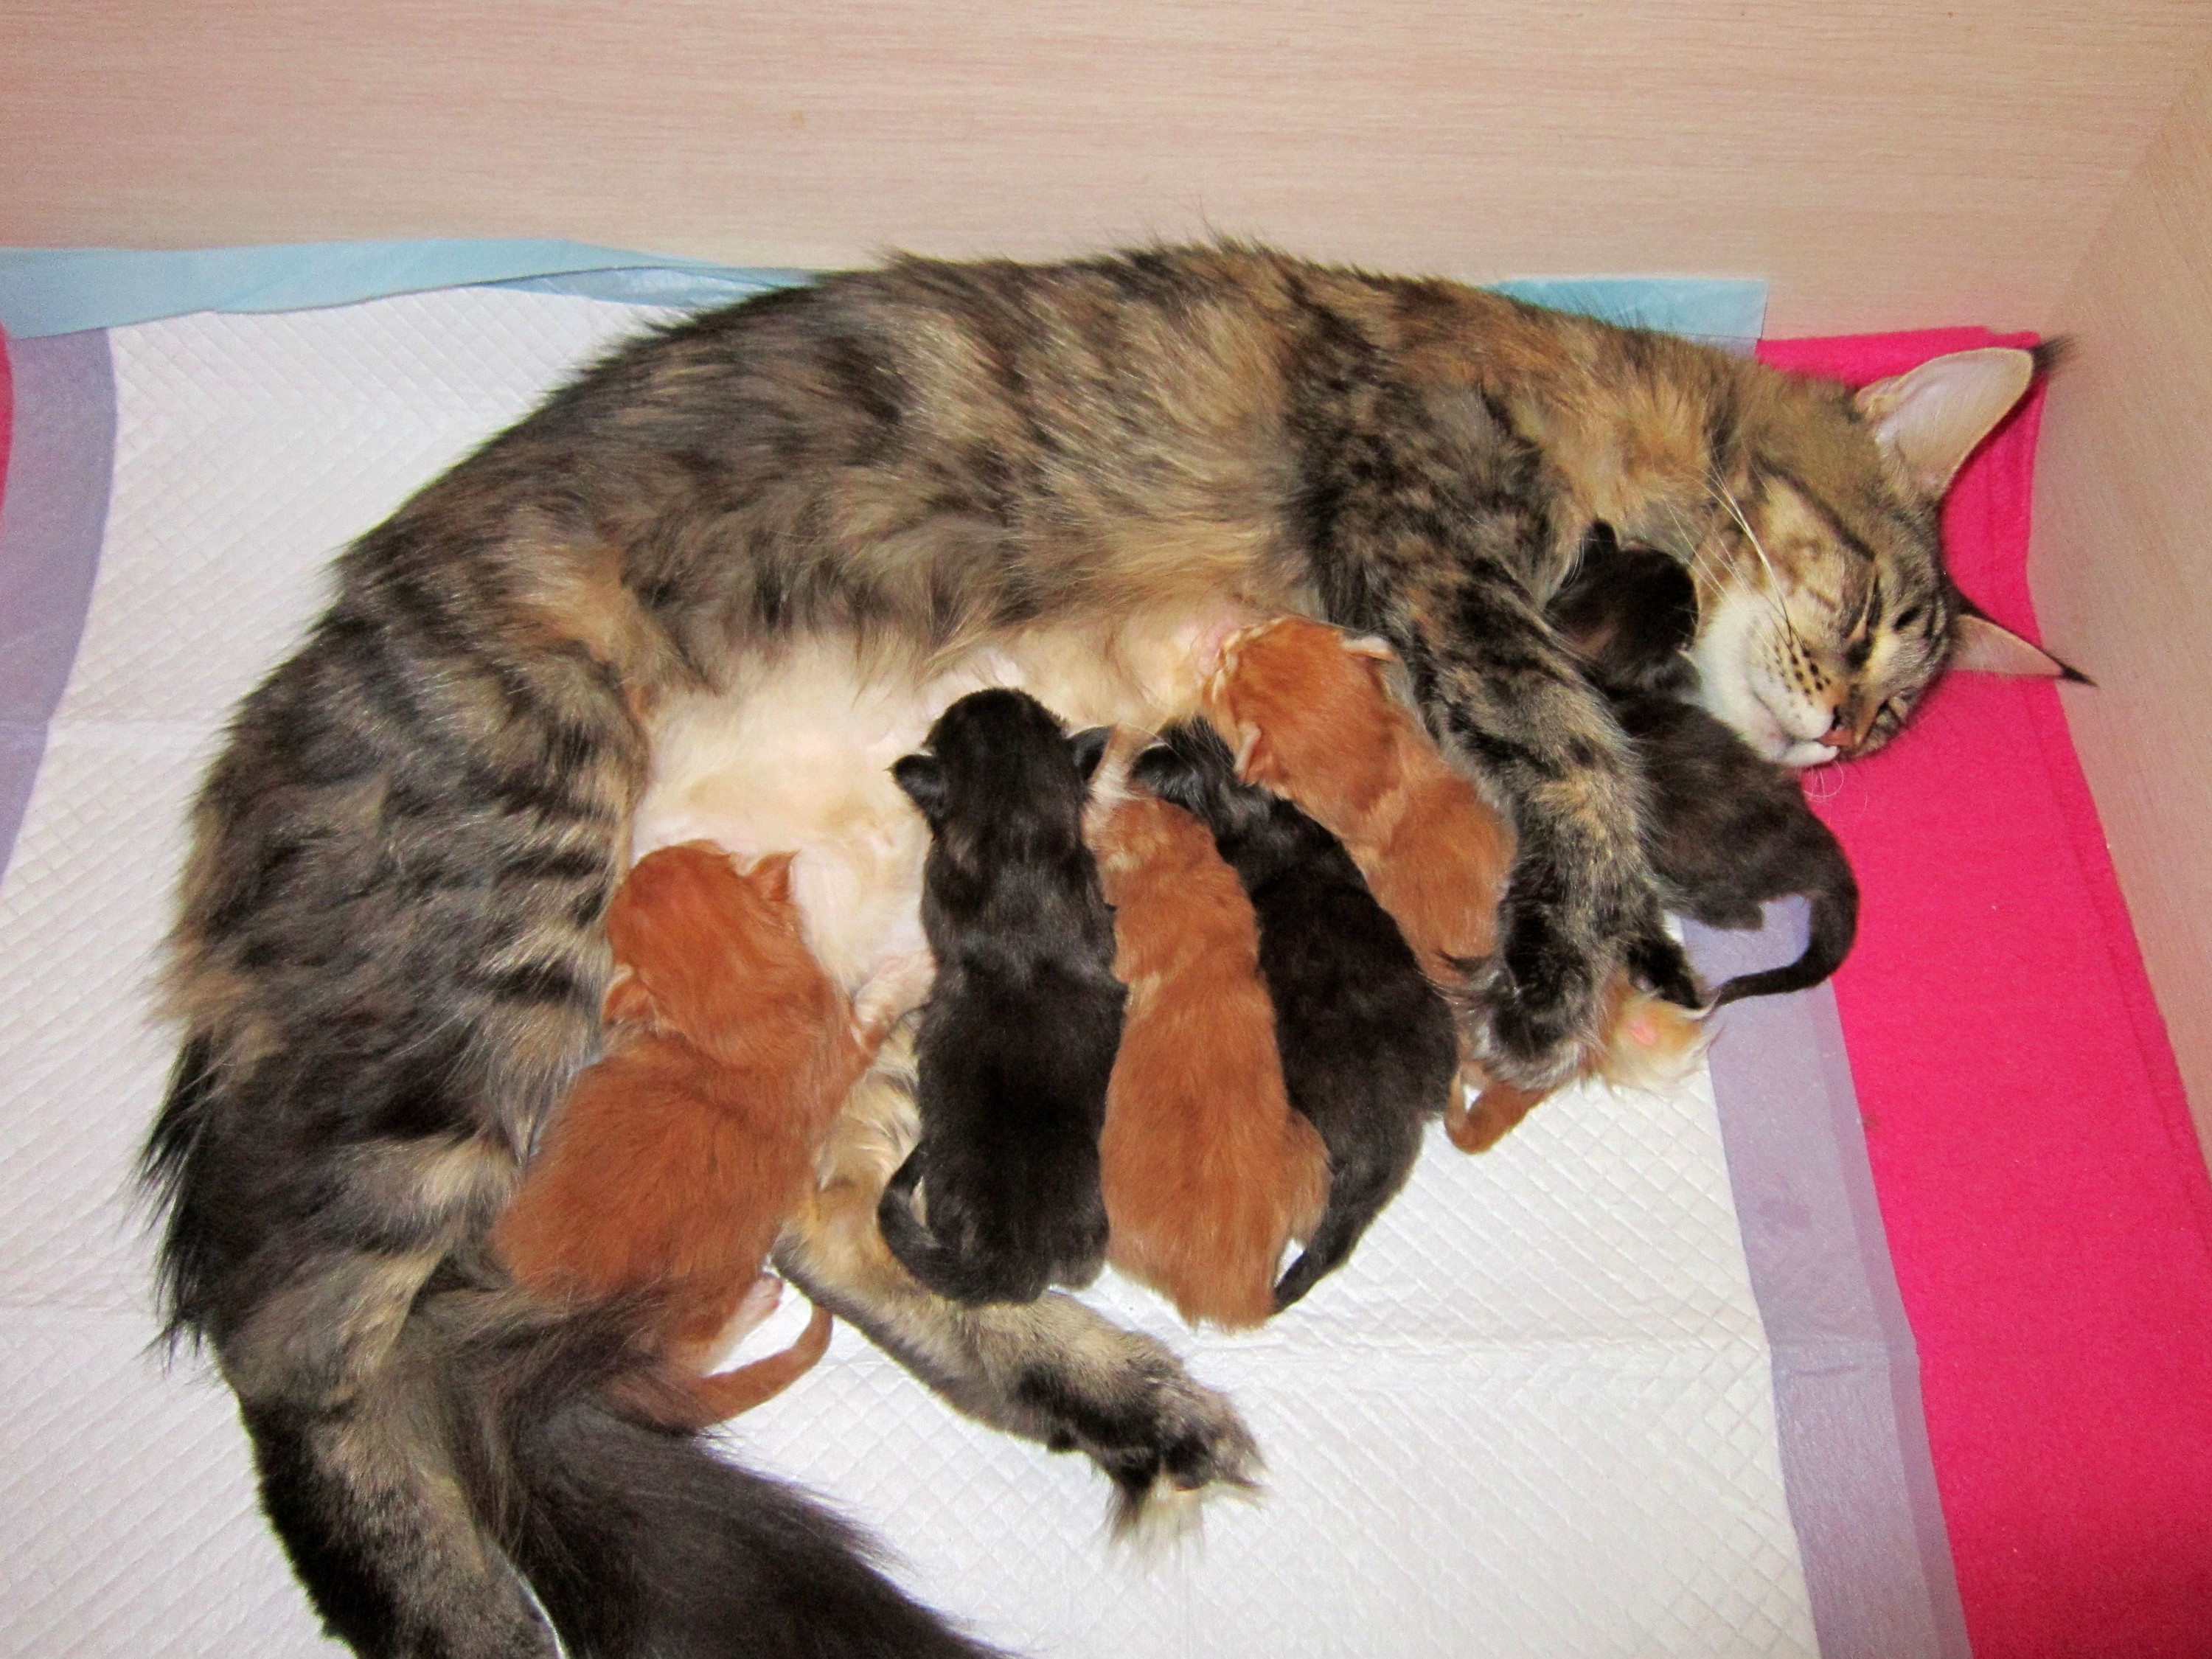 Кошка и котята после родов. Родовспоможение кошке.